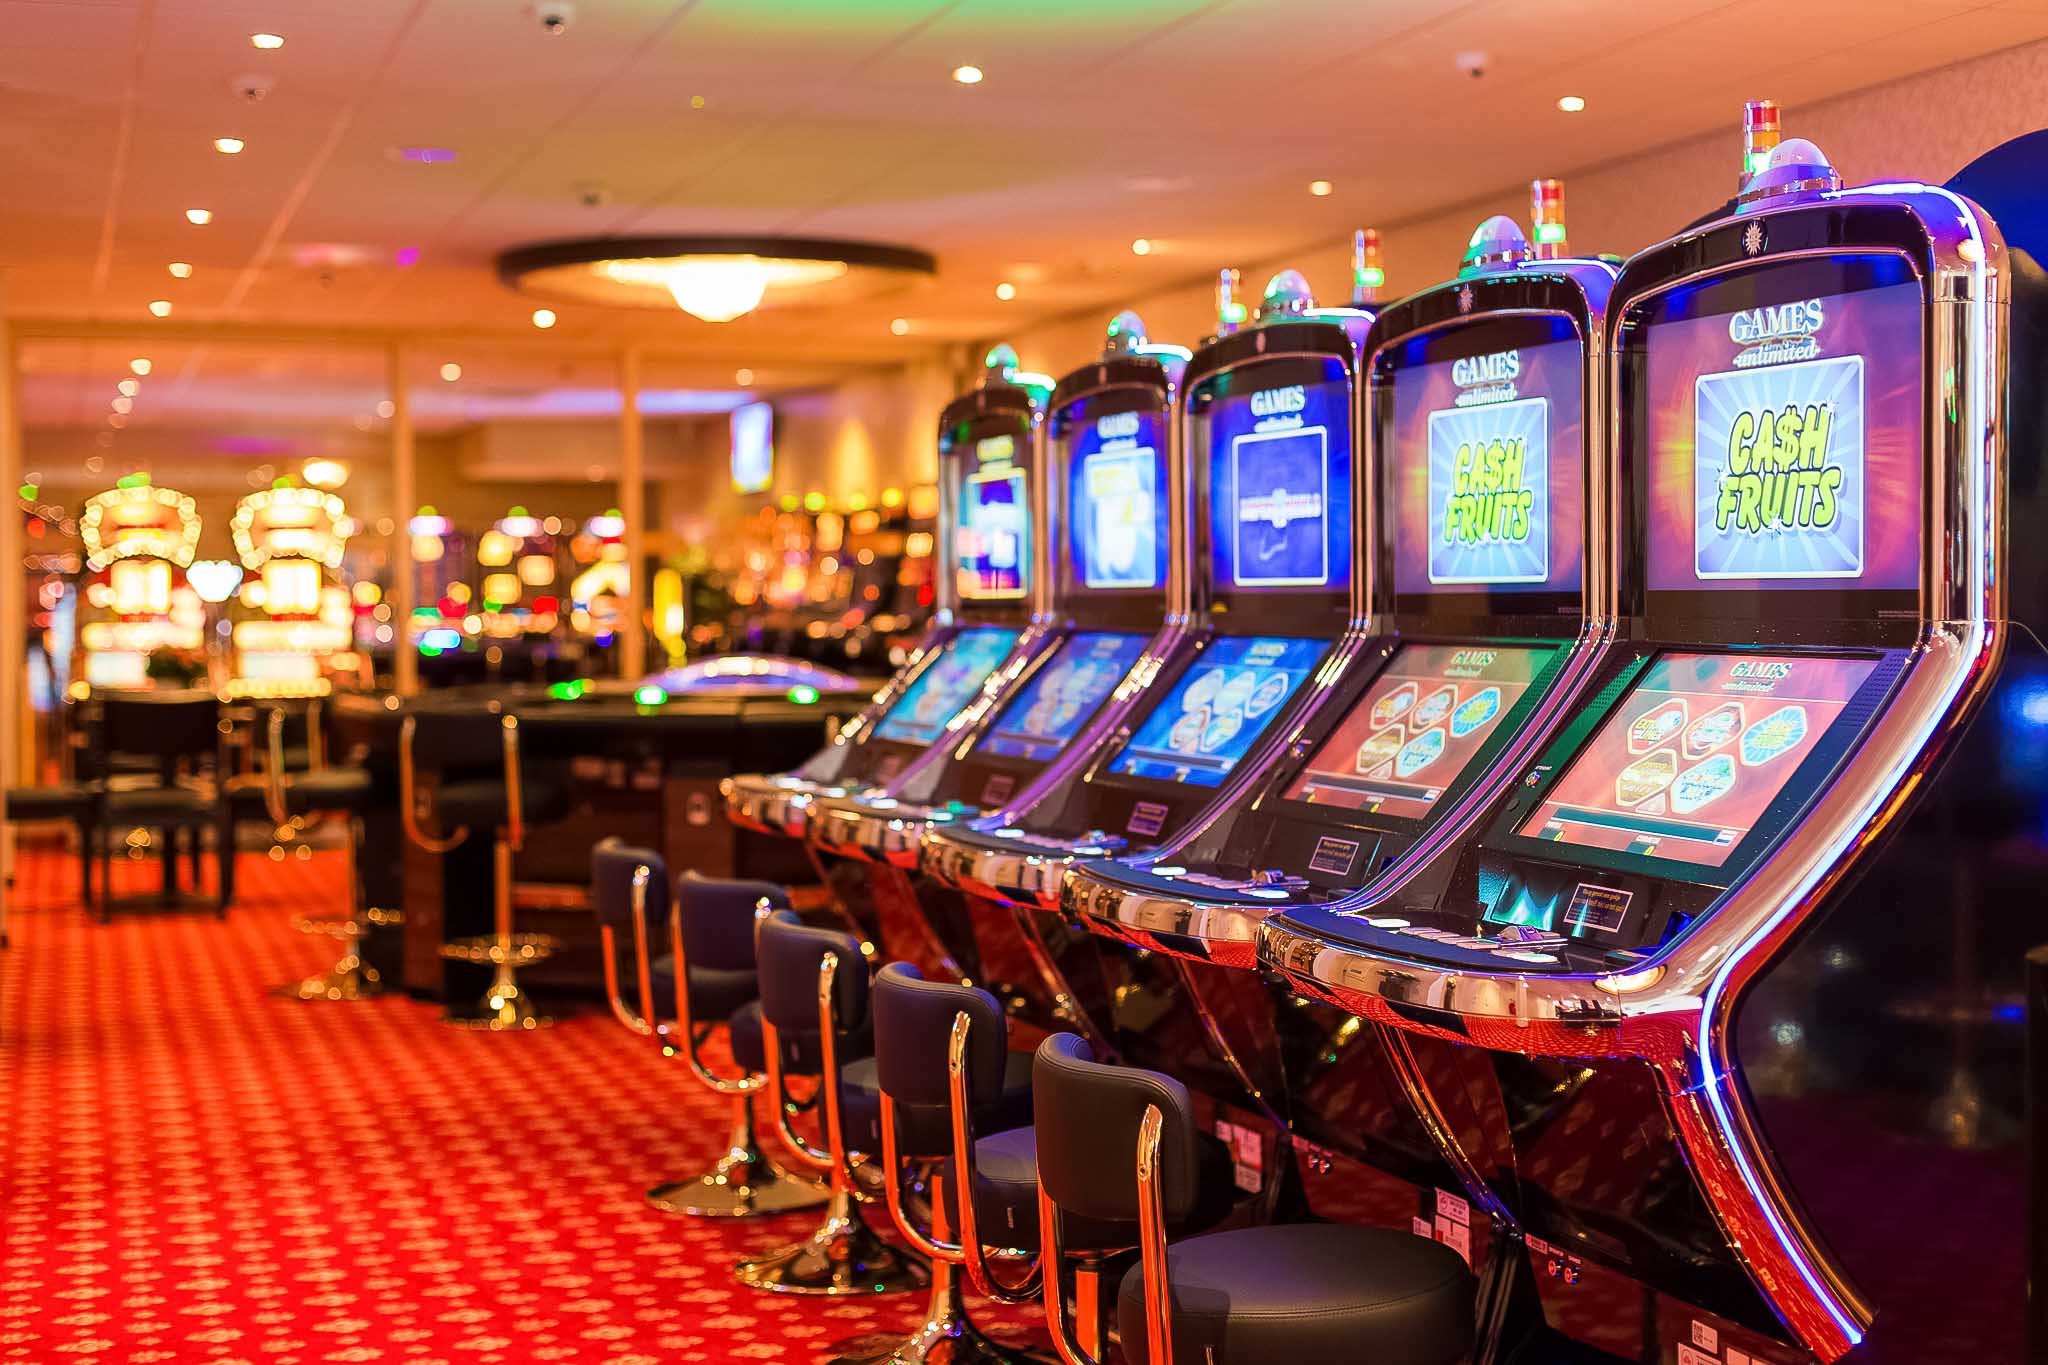 Milky casino эмулятор игровых автоматов бесплатно